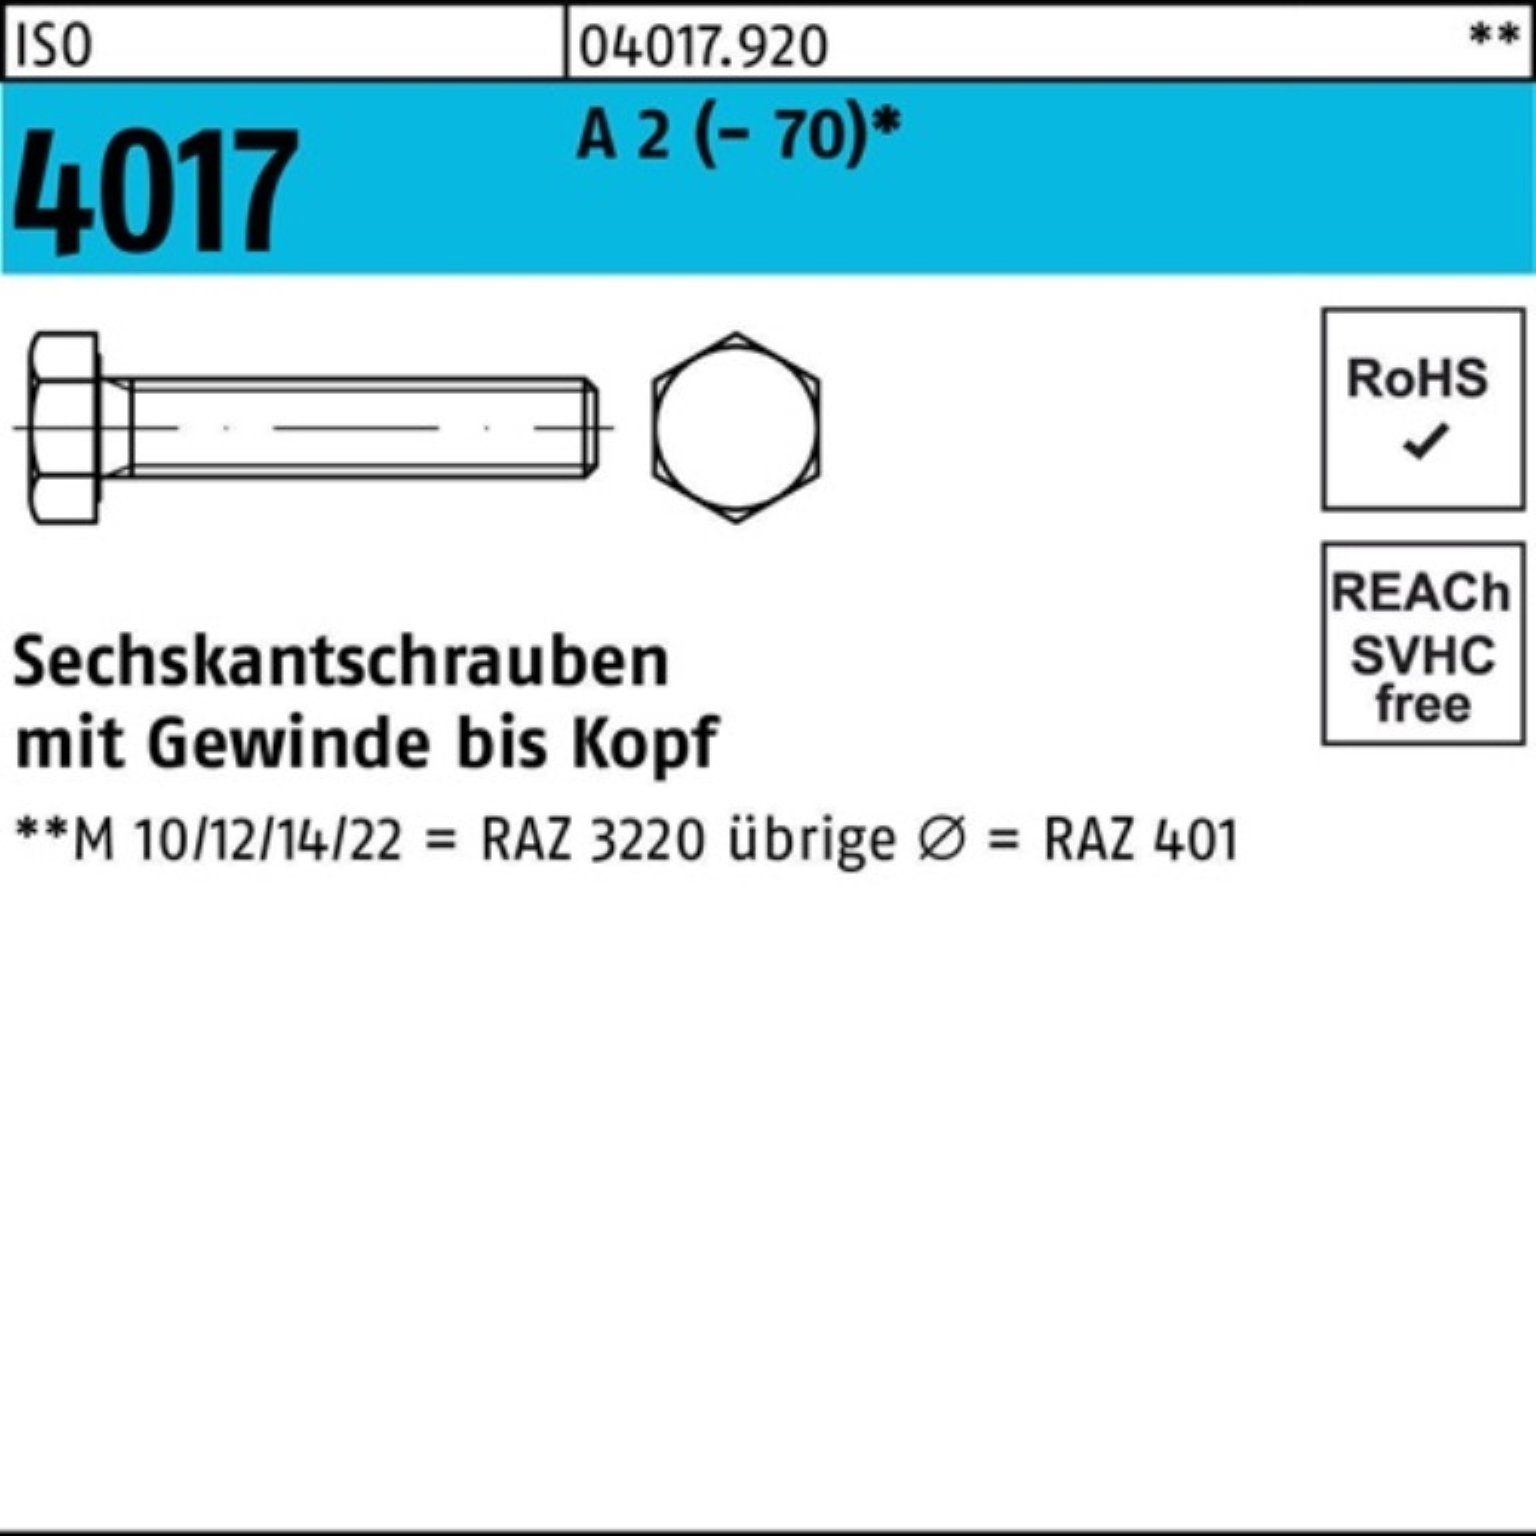 Bufab Sechskantschraube 100er Pack Sechskantschraube ISO 4017 VG M12x 180 A 2 (70) 1 Stück